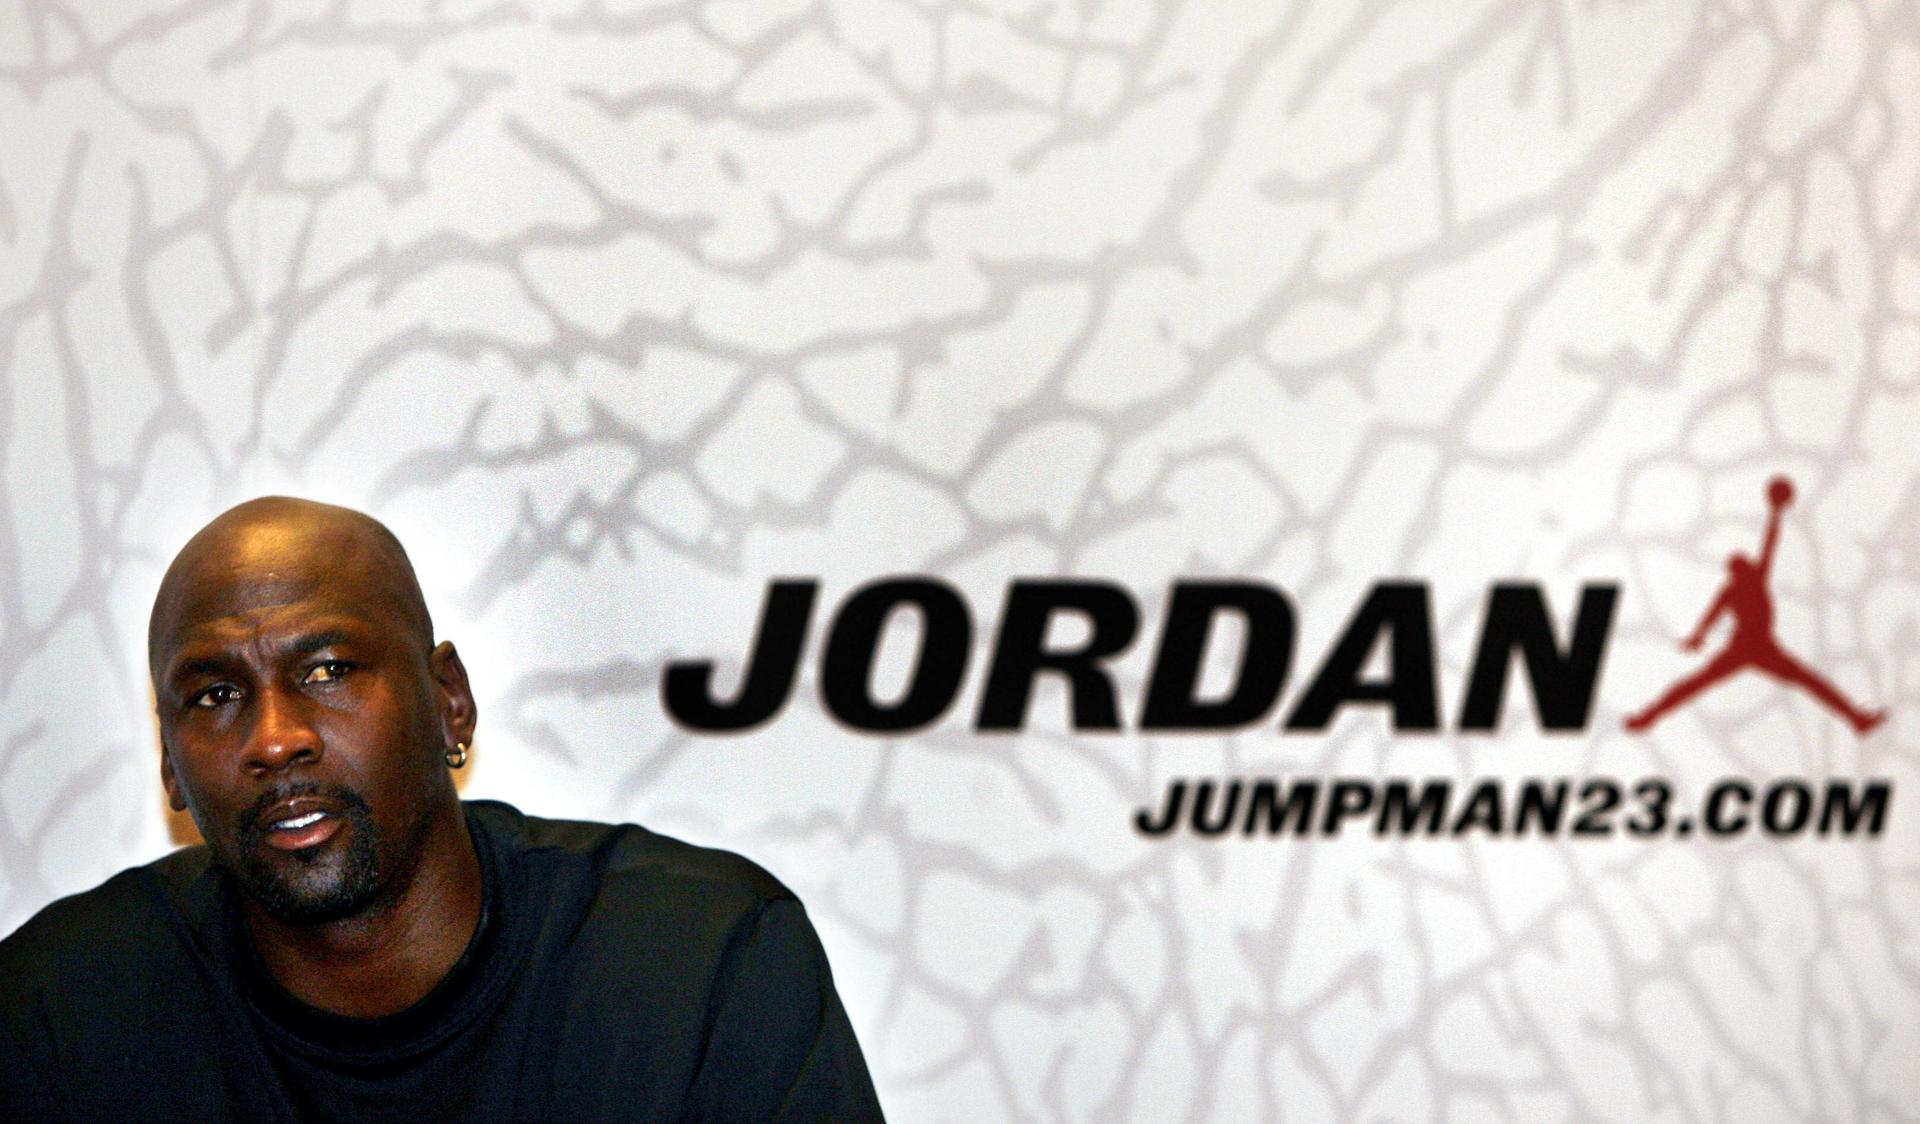 El exjugador de baloncesto de la NBA, Michael Jordan, en una foto de archivo. EFE/Guido Manuilo